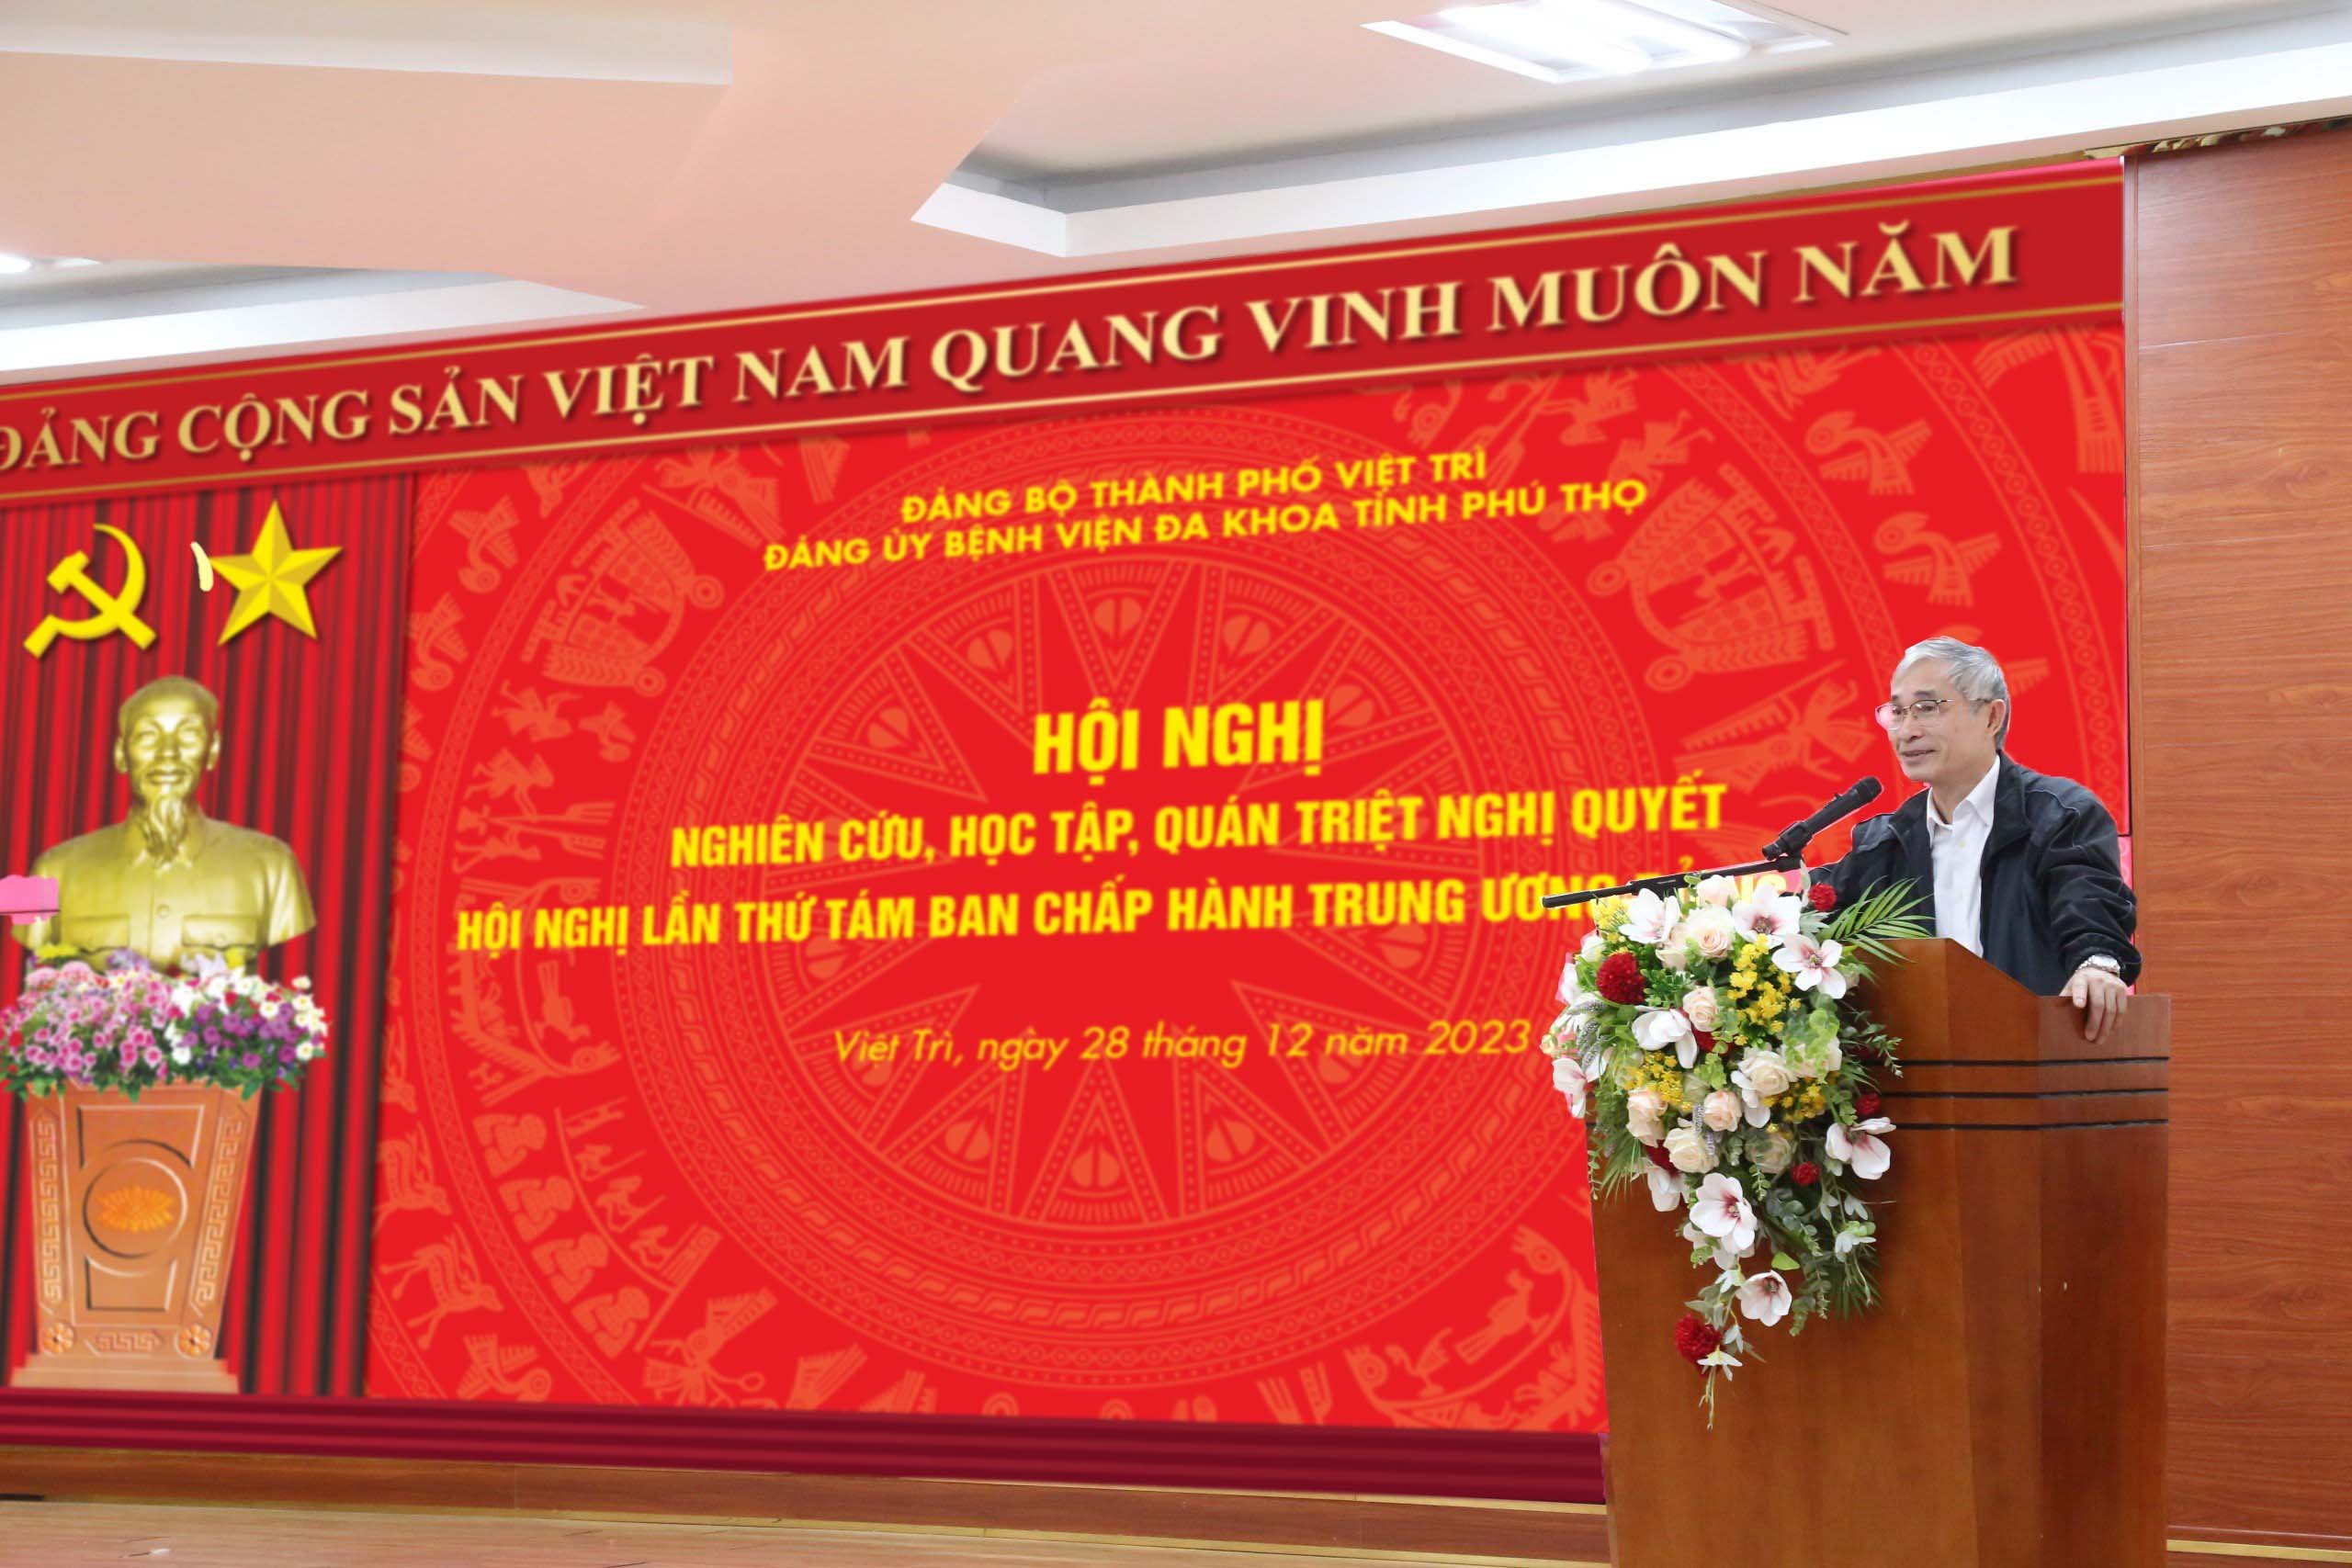 Đồng chí Phạm Văn Mến – Ủy viên BTV Thành ủy, Chủ tịch UBMTTQ thành phố Việt Trì truyền đạt nghị quyết tại hội nghị